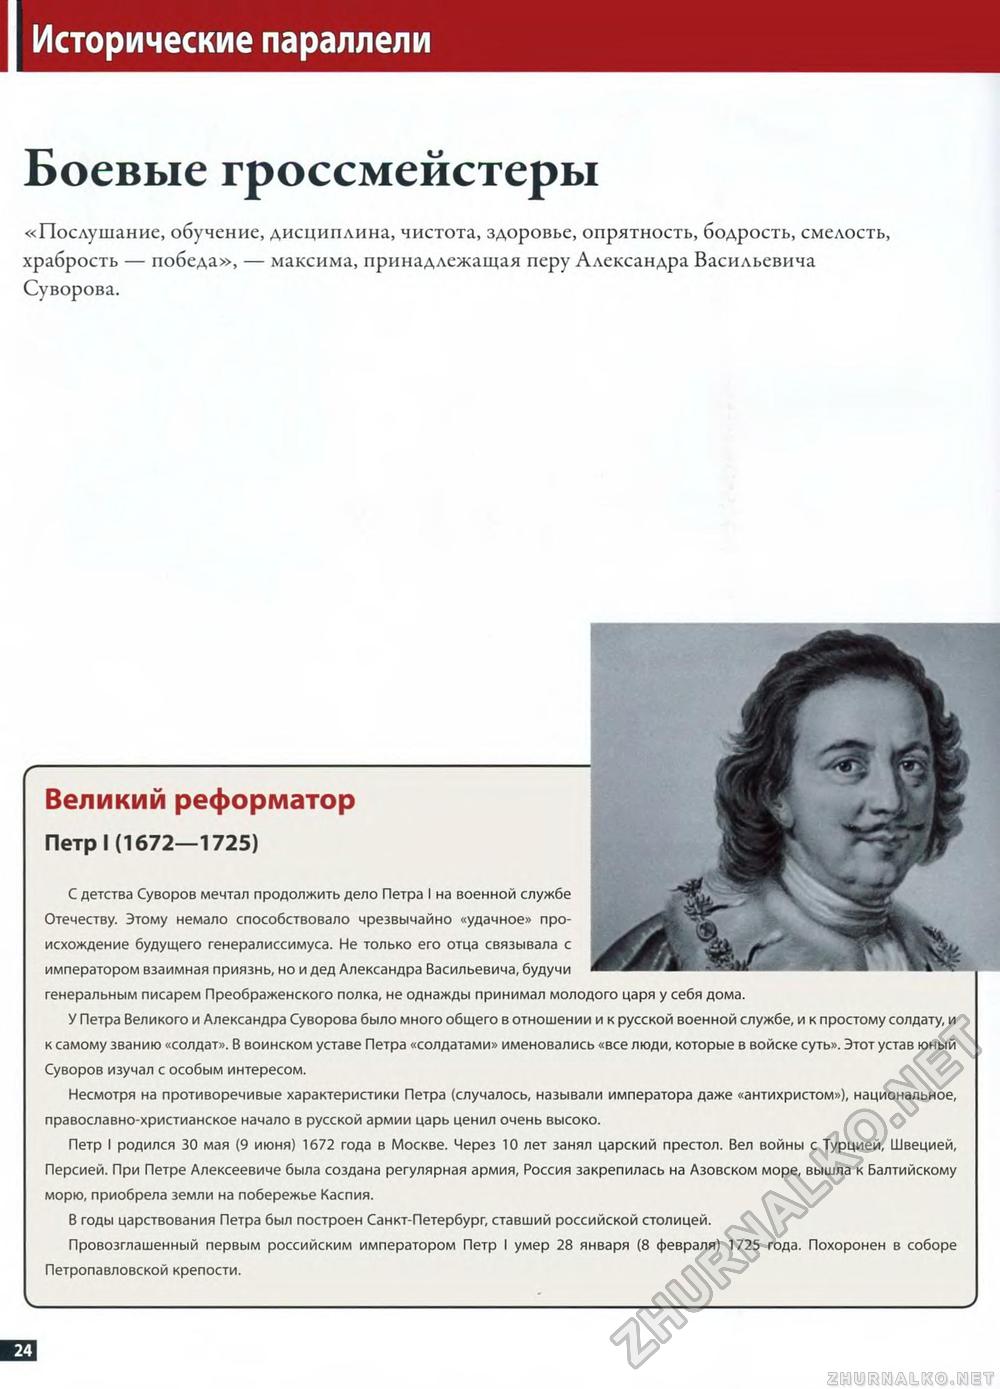 92. Александр Суворов, страница 24